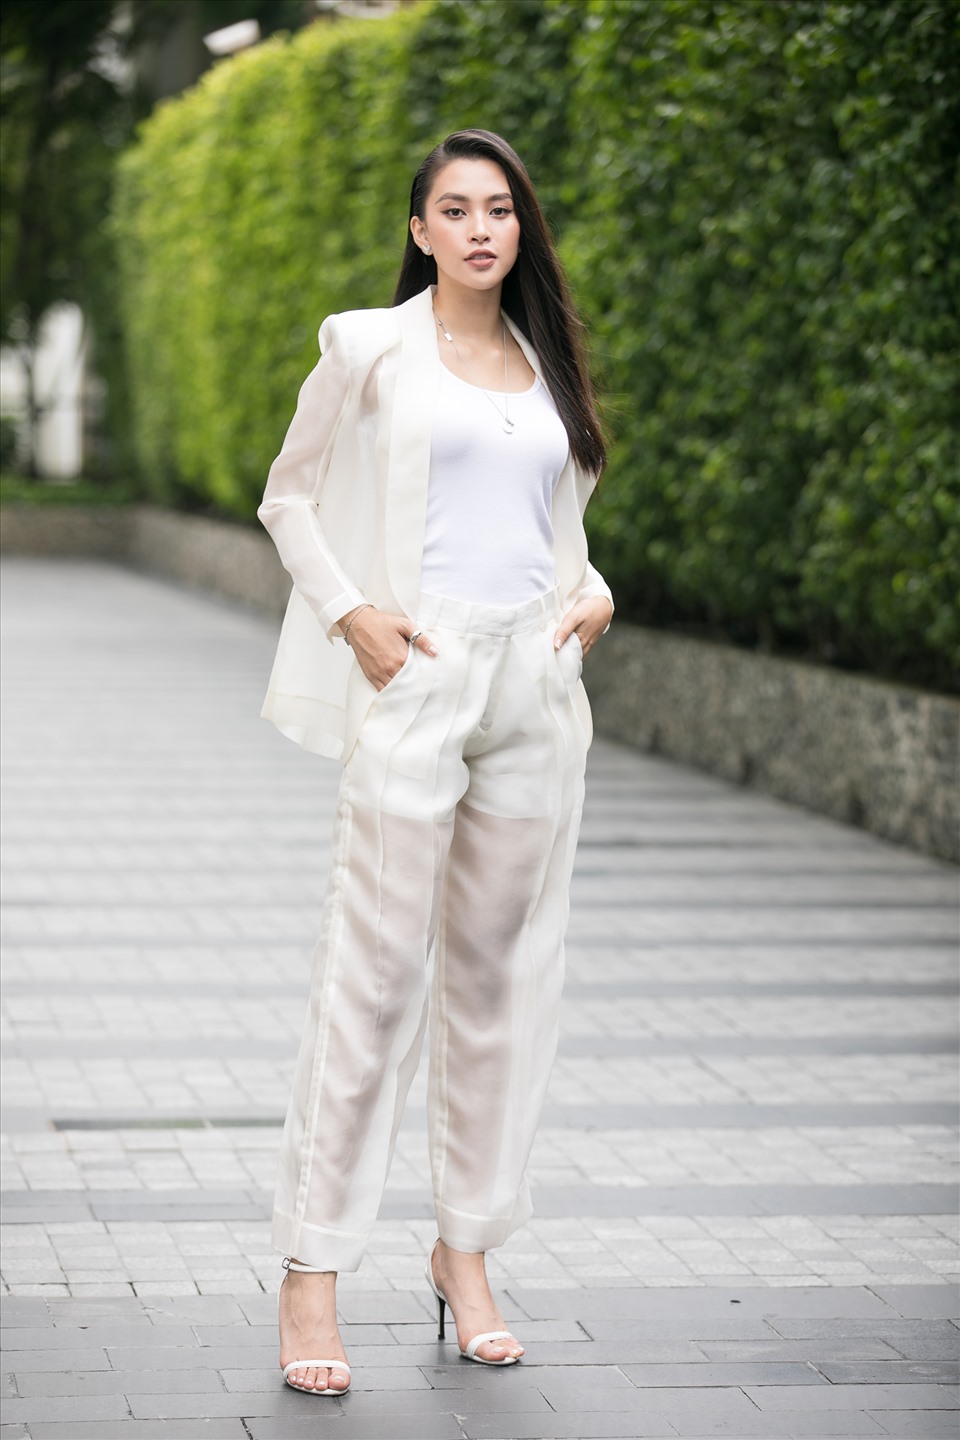 Sáng 26.9, buổi sơ khảo phía Nam Hoa hậu Việt Nam 2020 đã chính thức diễn ra tại thành phố Hồ Chí Minh. Sự xuất hiện của đương kim Hoa hậu Tiểu Vy đã lập tức thu hút được sự chú ý. Ảnh: HHVN.